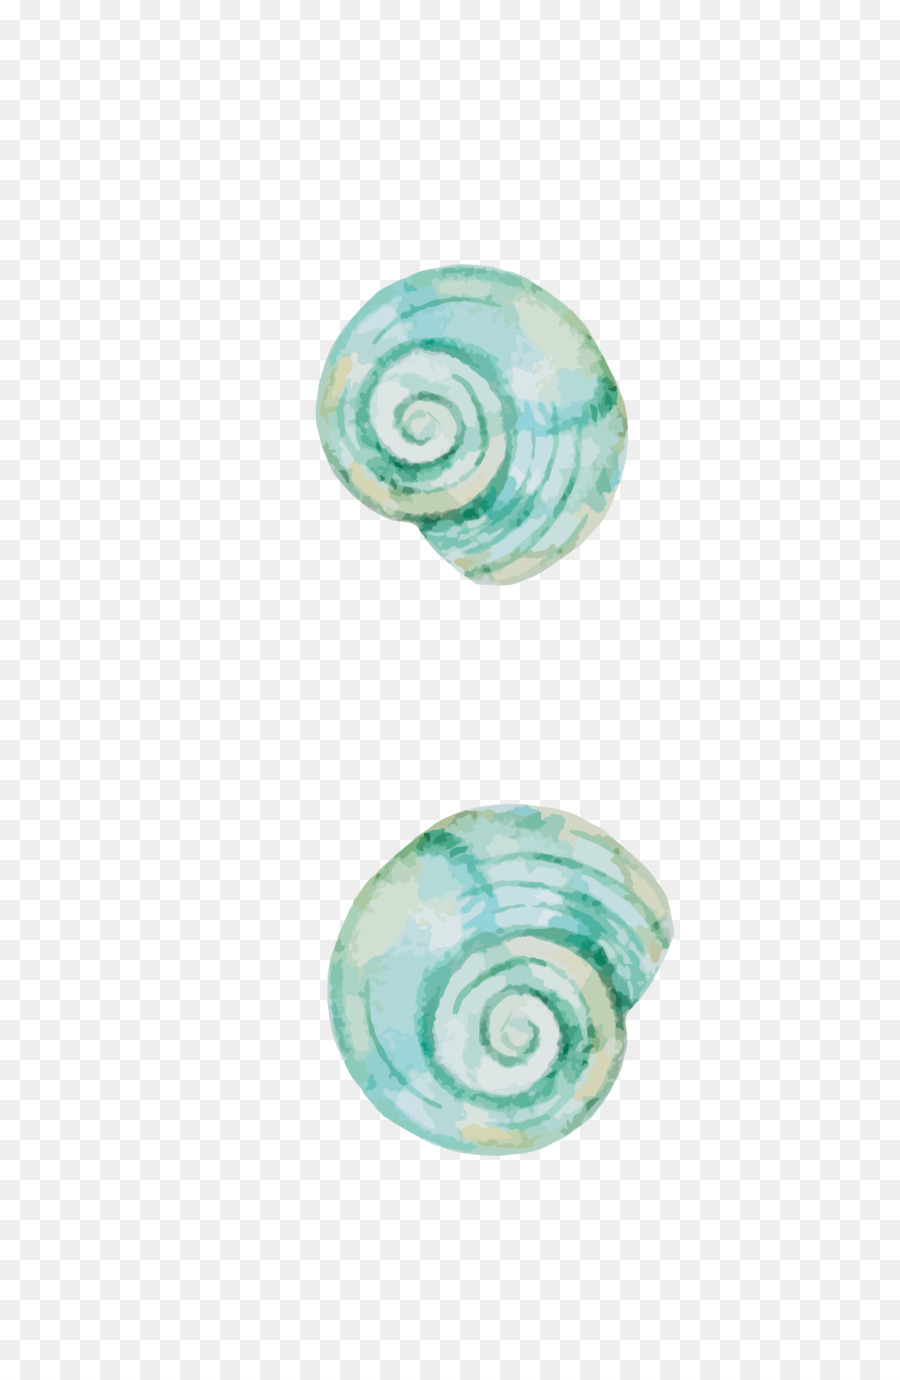 Escargot Molluske shell Orthogastropoda Schnecke - Grüne hand-Bemalte schneckenhaus